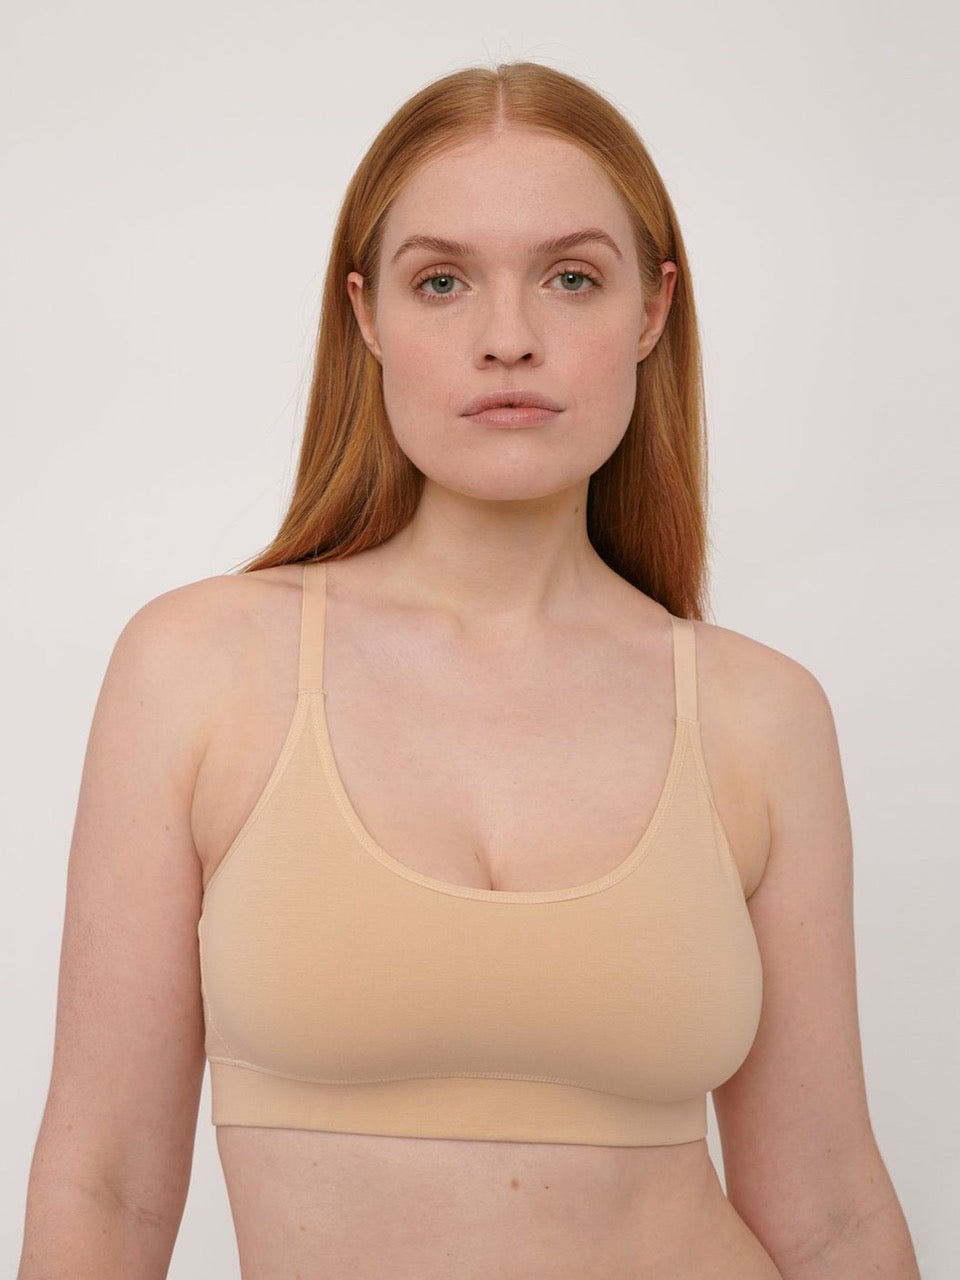 A woman wearing a Basic Bra ⋅ organic cotton – Oak sports bra from Organic Basics.